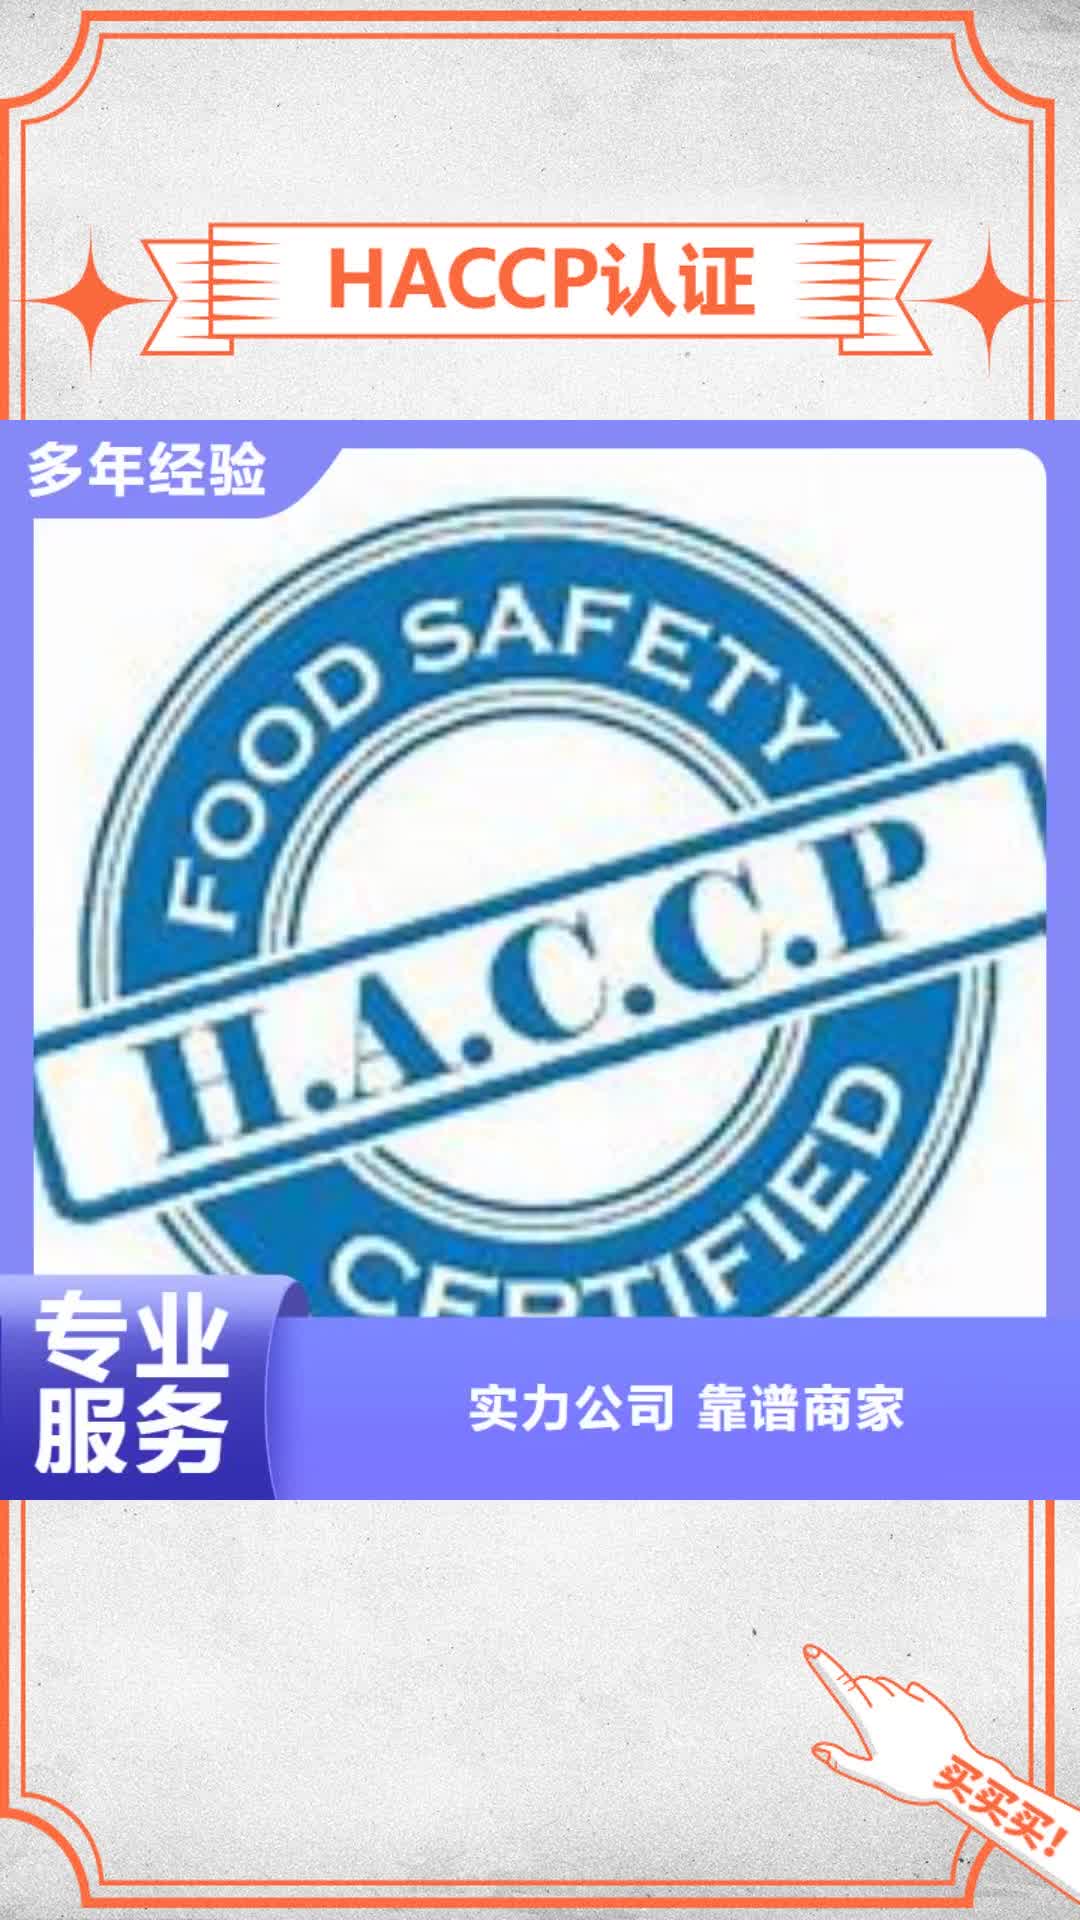 濮阳【HACCP认证】-ISO10012认证信誉保证